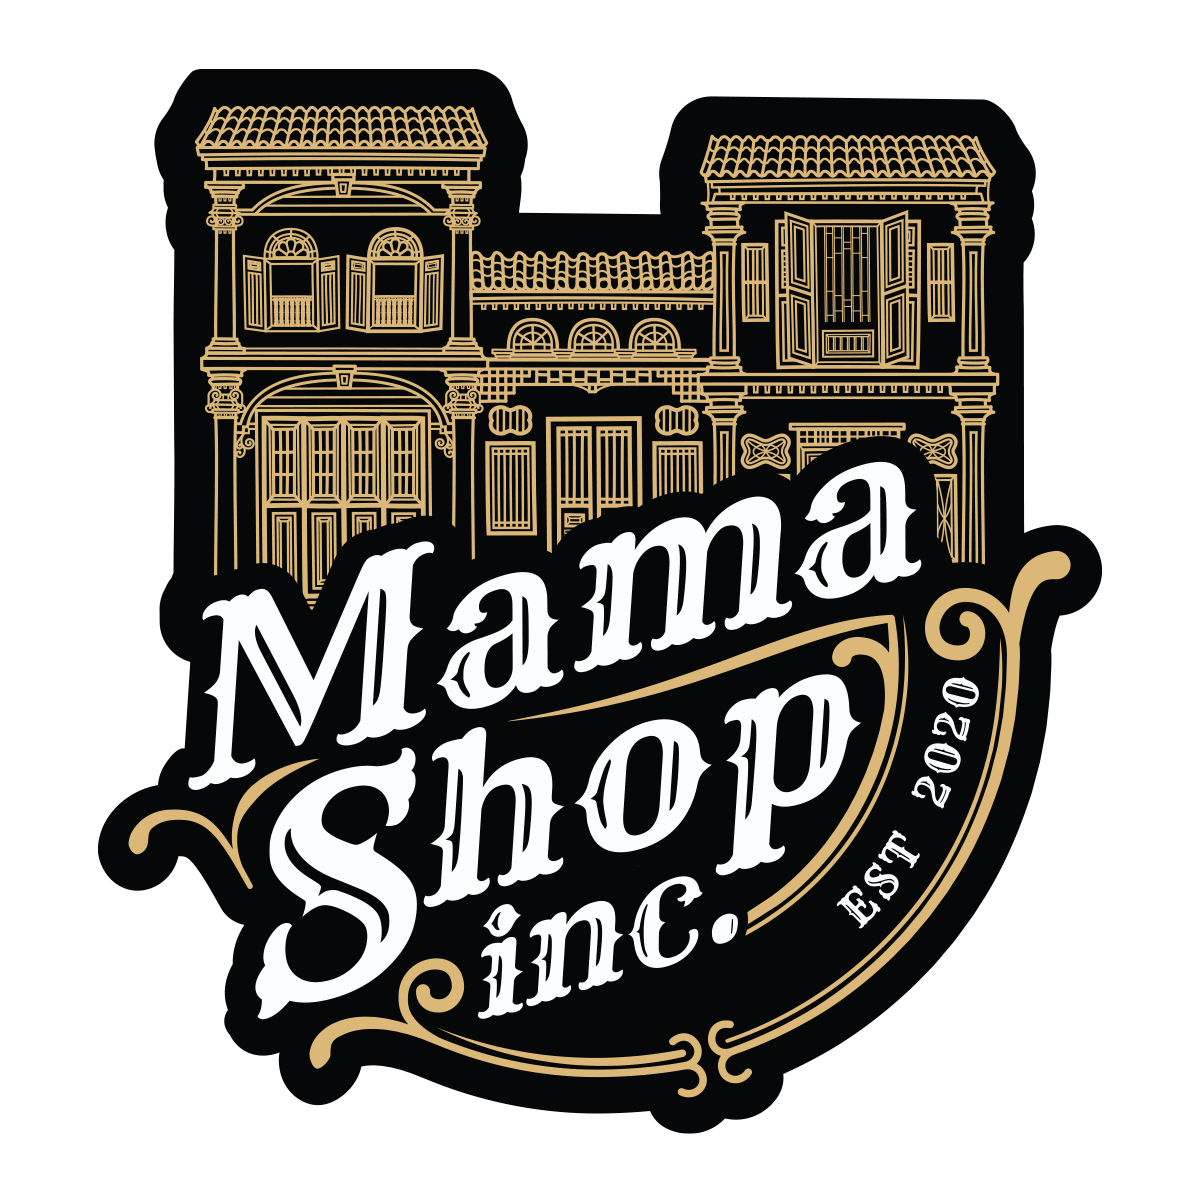 Mamashop Inc.